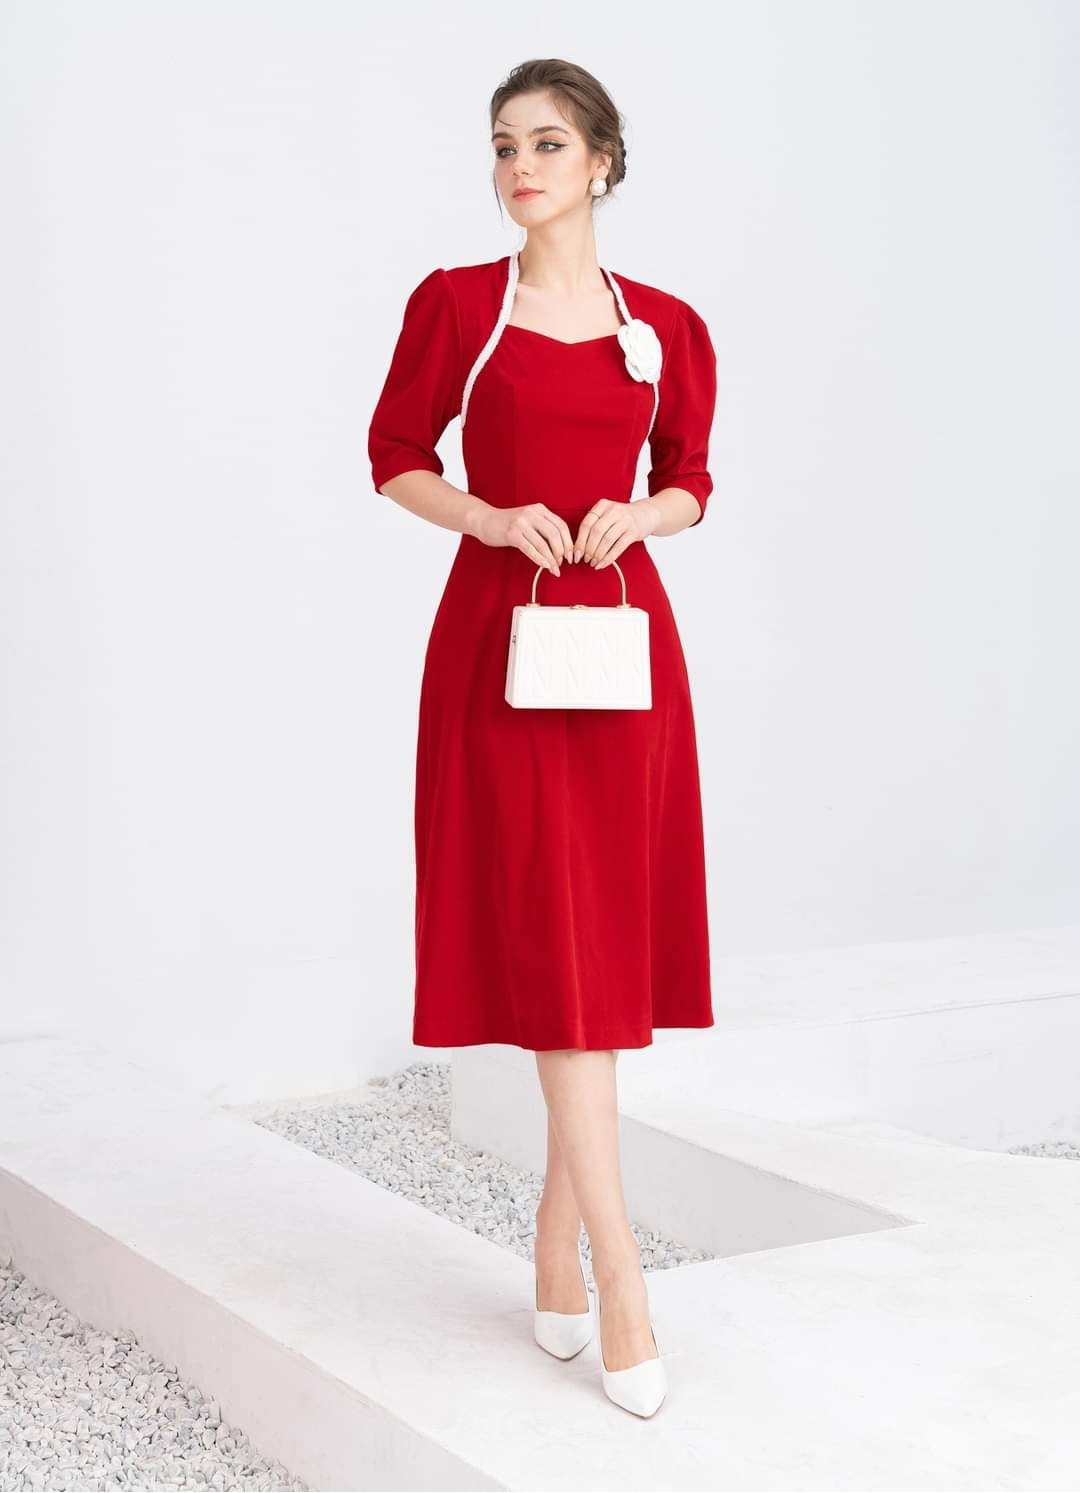 Đầm Đỏ, Váy Nhung Màu Đỏ Mặc Tết, Kiểu Phối Ren Cổ Tiểu Thư Cực Xinh, Hàng  Đẹp, Kiểu Dáng Nữ Tính | Shopee Việt Nam